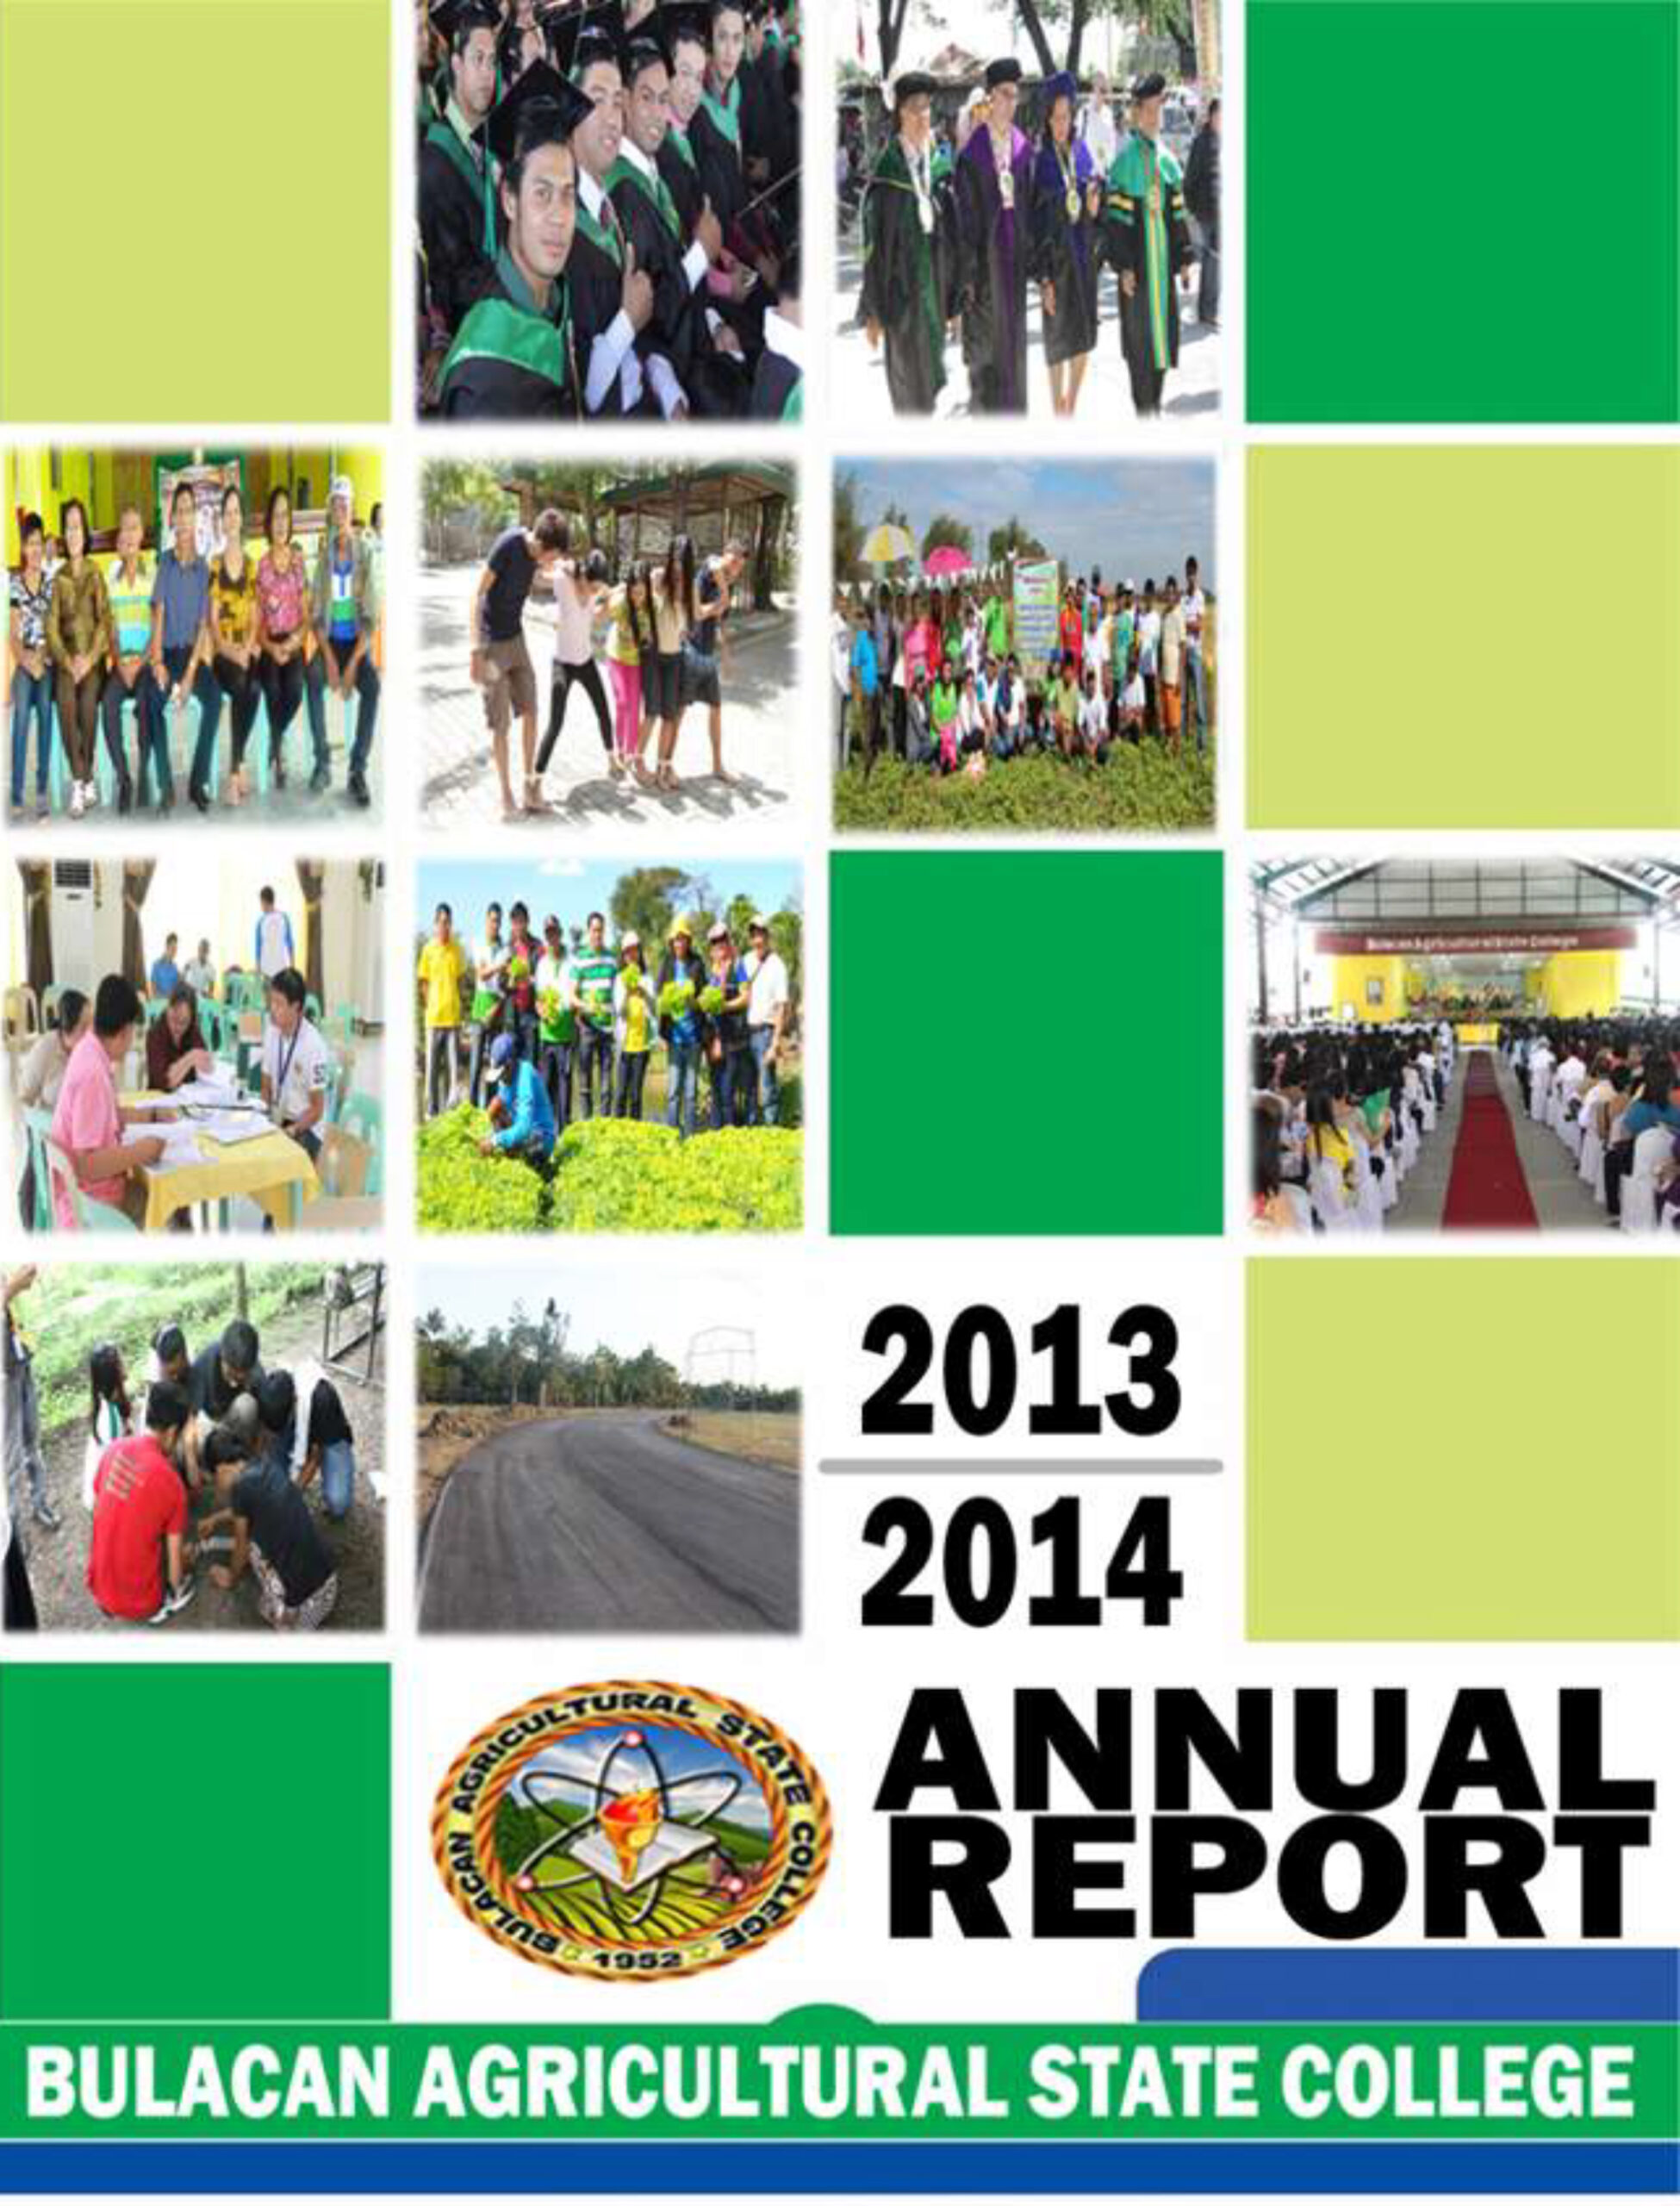 AnnualReport2013-2014